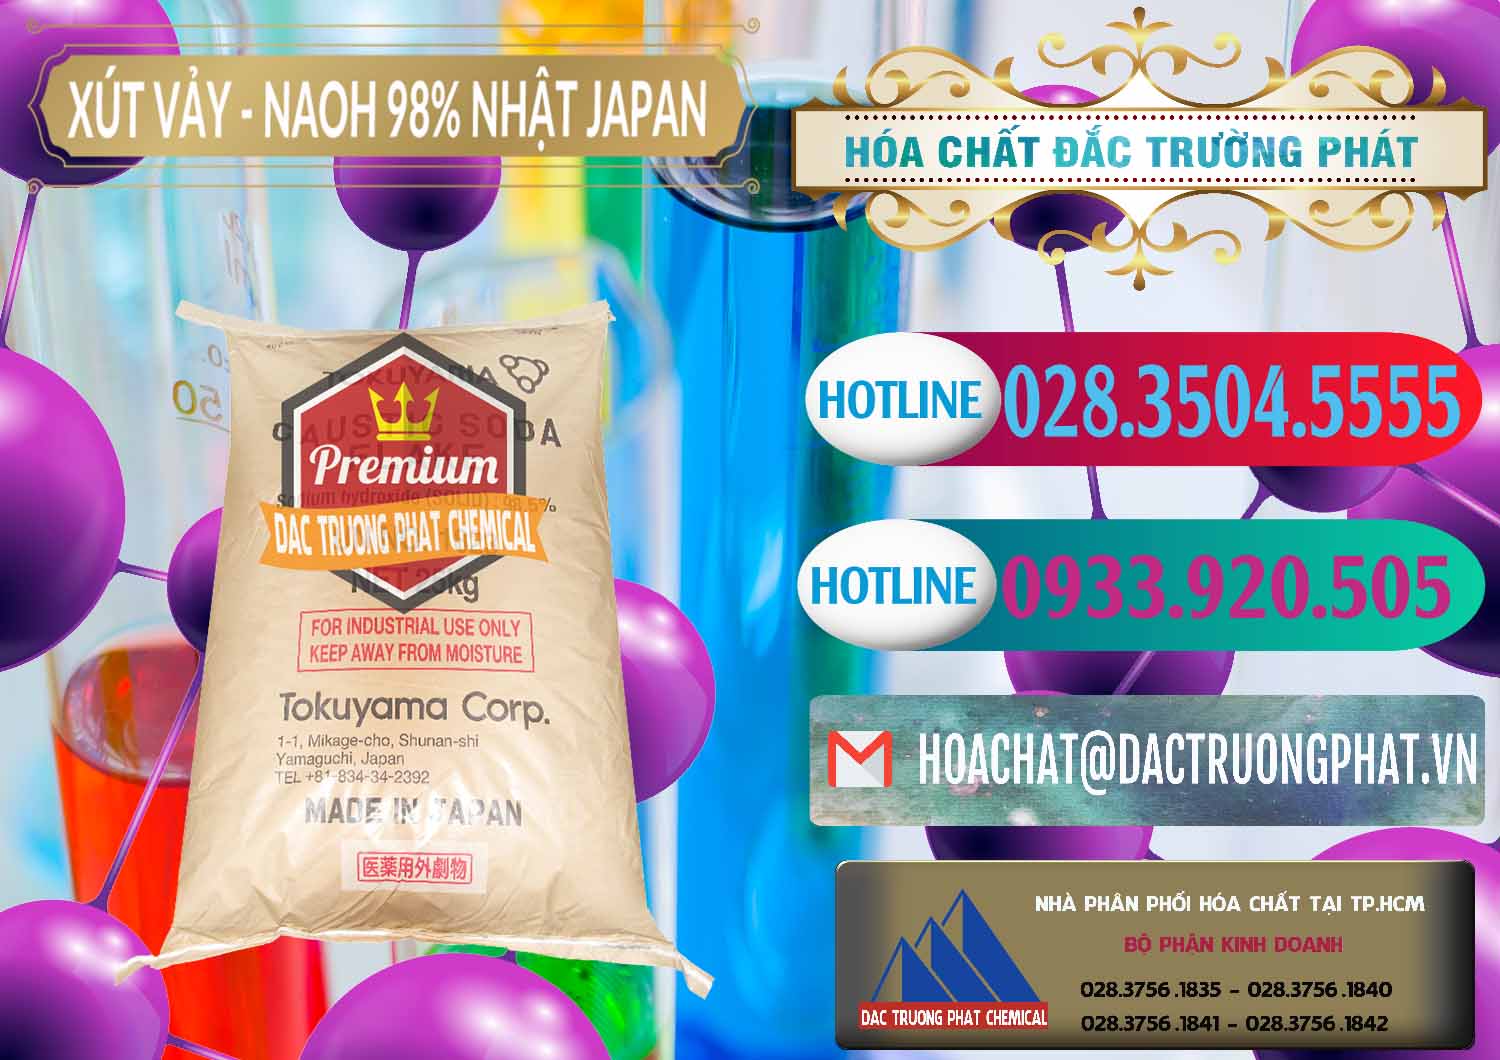 Công ty chuyên cung cấp và bán Xút Vảy - NaOH Vảy 98% Tokuyama Nhật Bản Japan - 0173 - Công ty phân phối _ cung cấp hóa chất tại TP.HCM - truongphat.vn